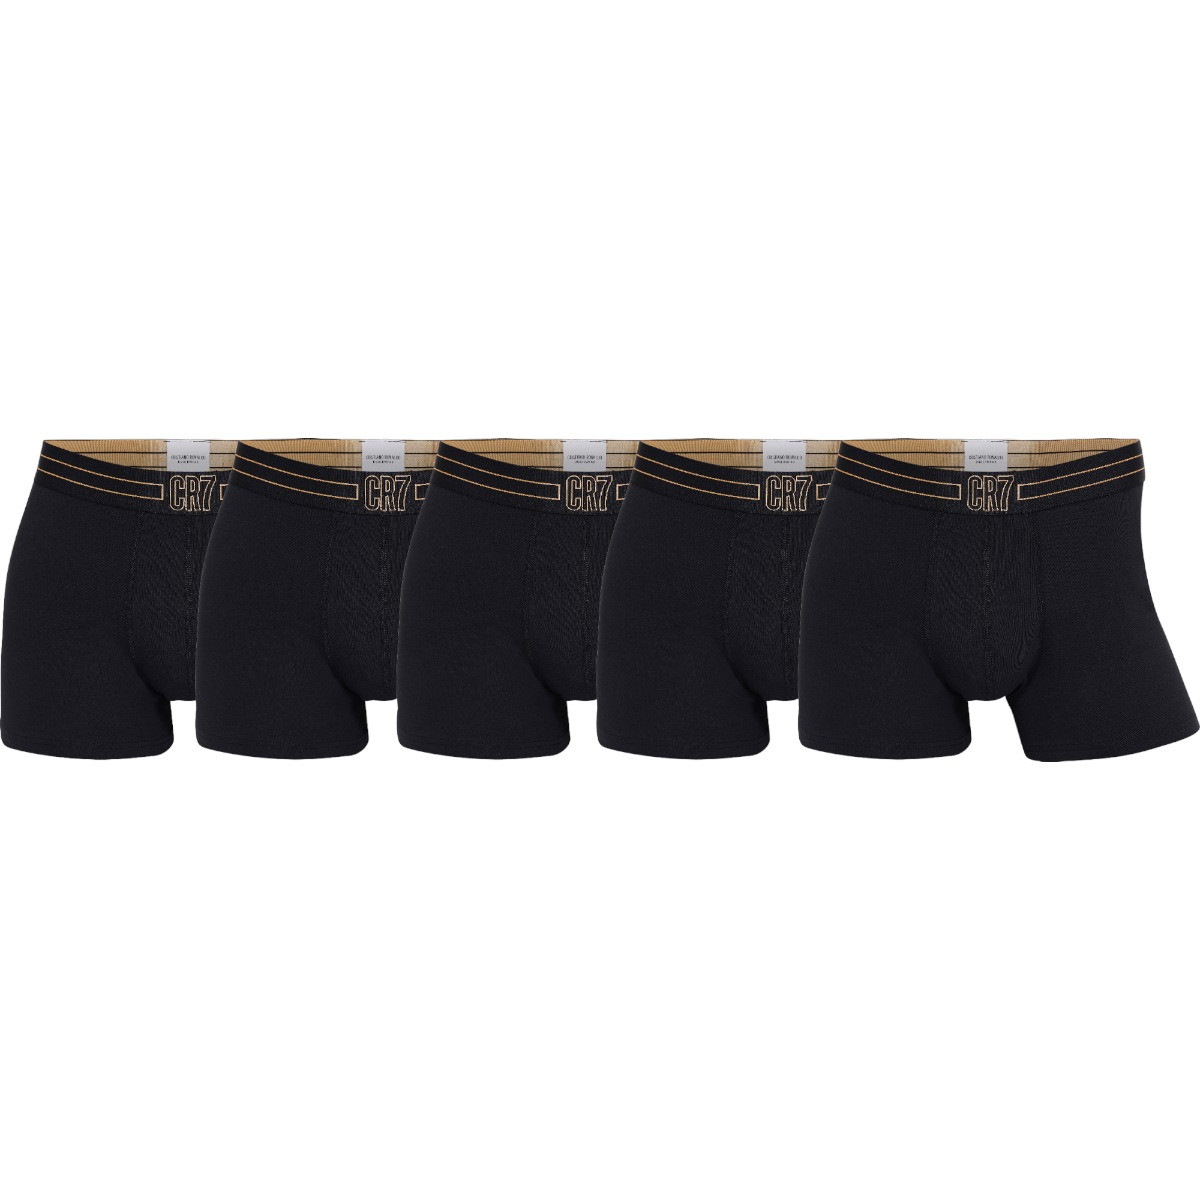 Pánské boxerky Cr7 5Pack 300-8106-49-2403 černé L